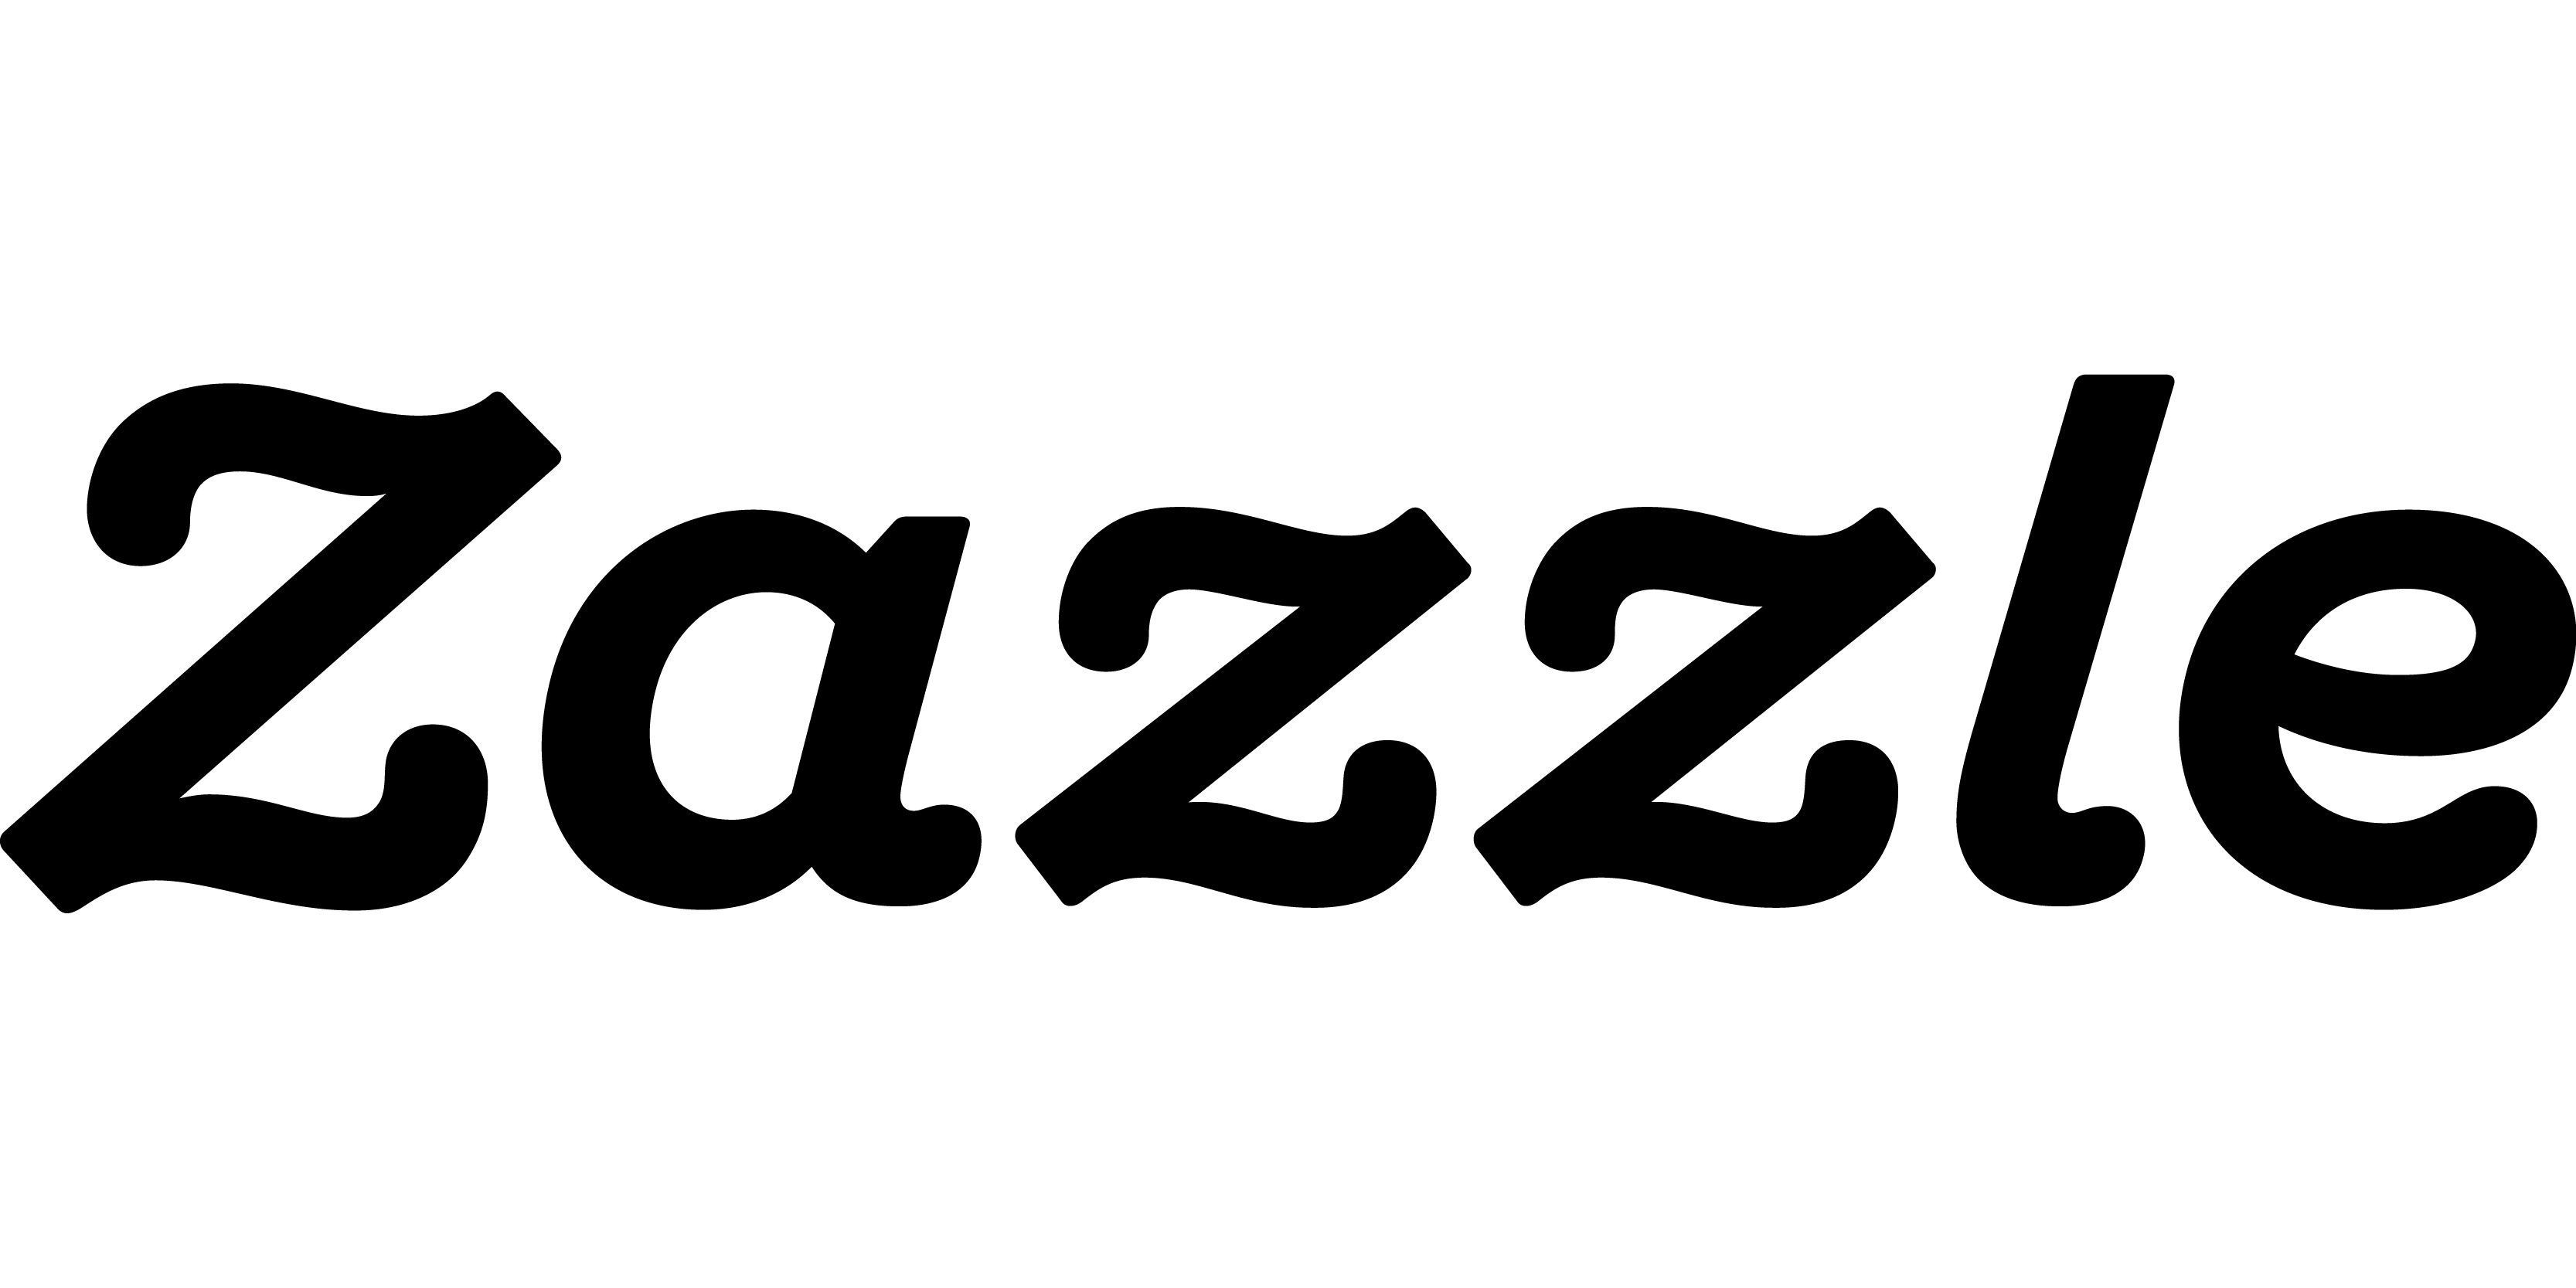 Zazzle.com Logo - Zazzle Logo and Brand